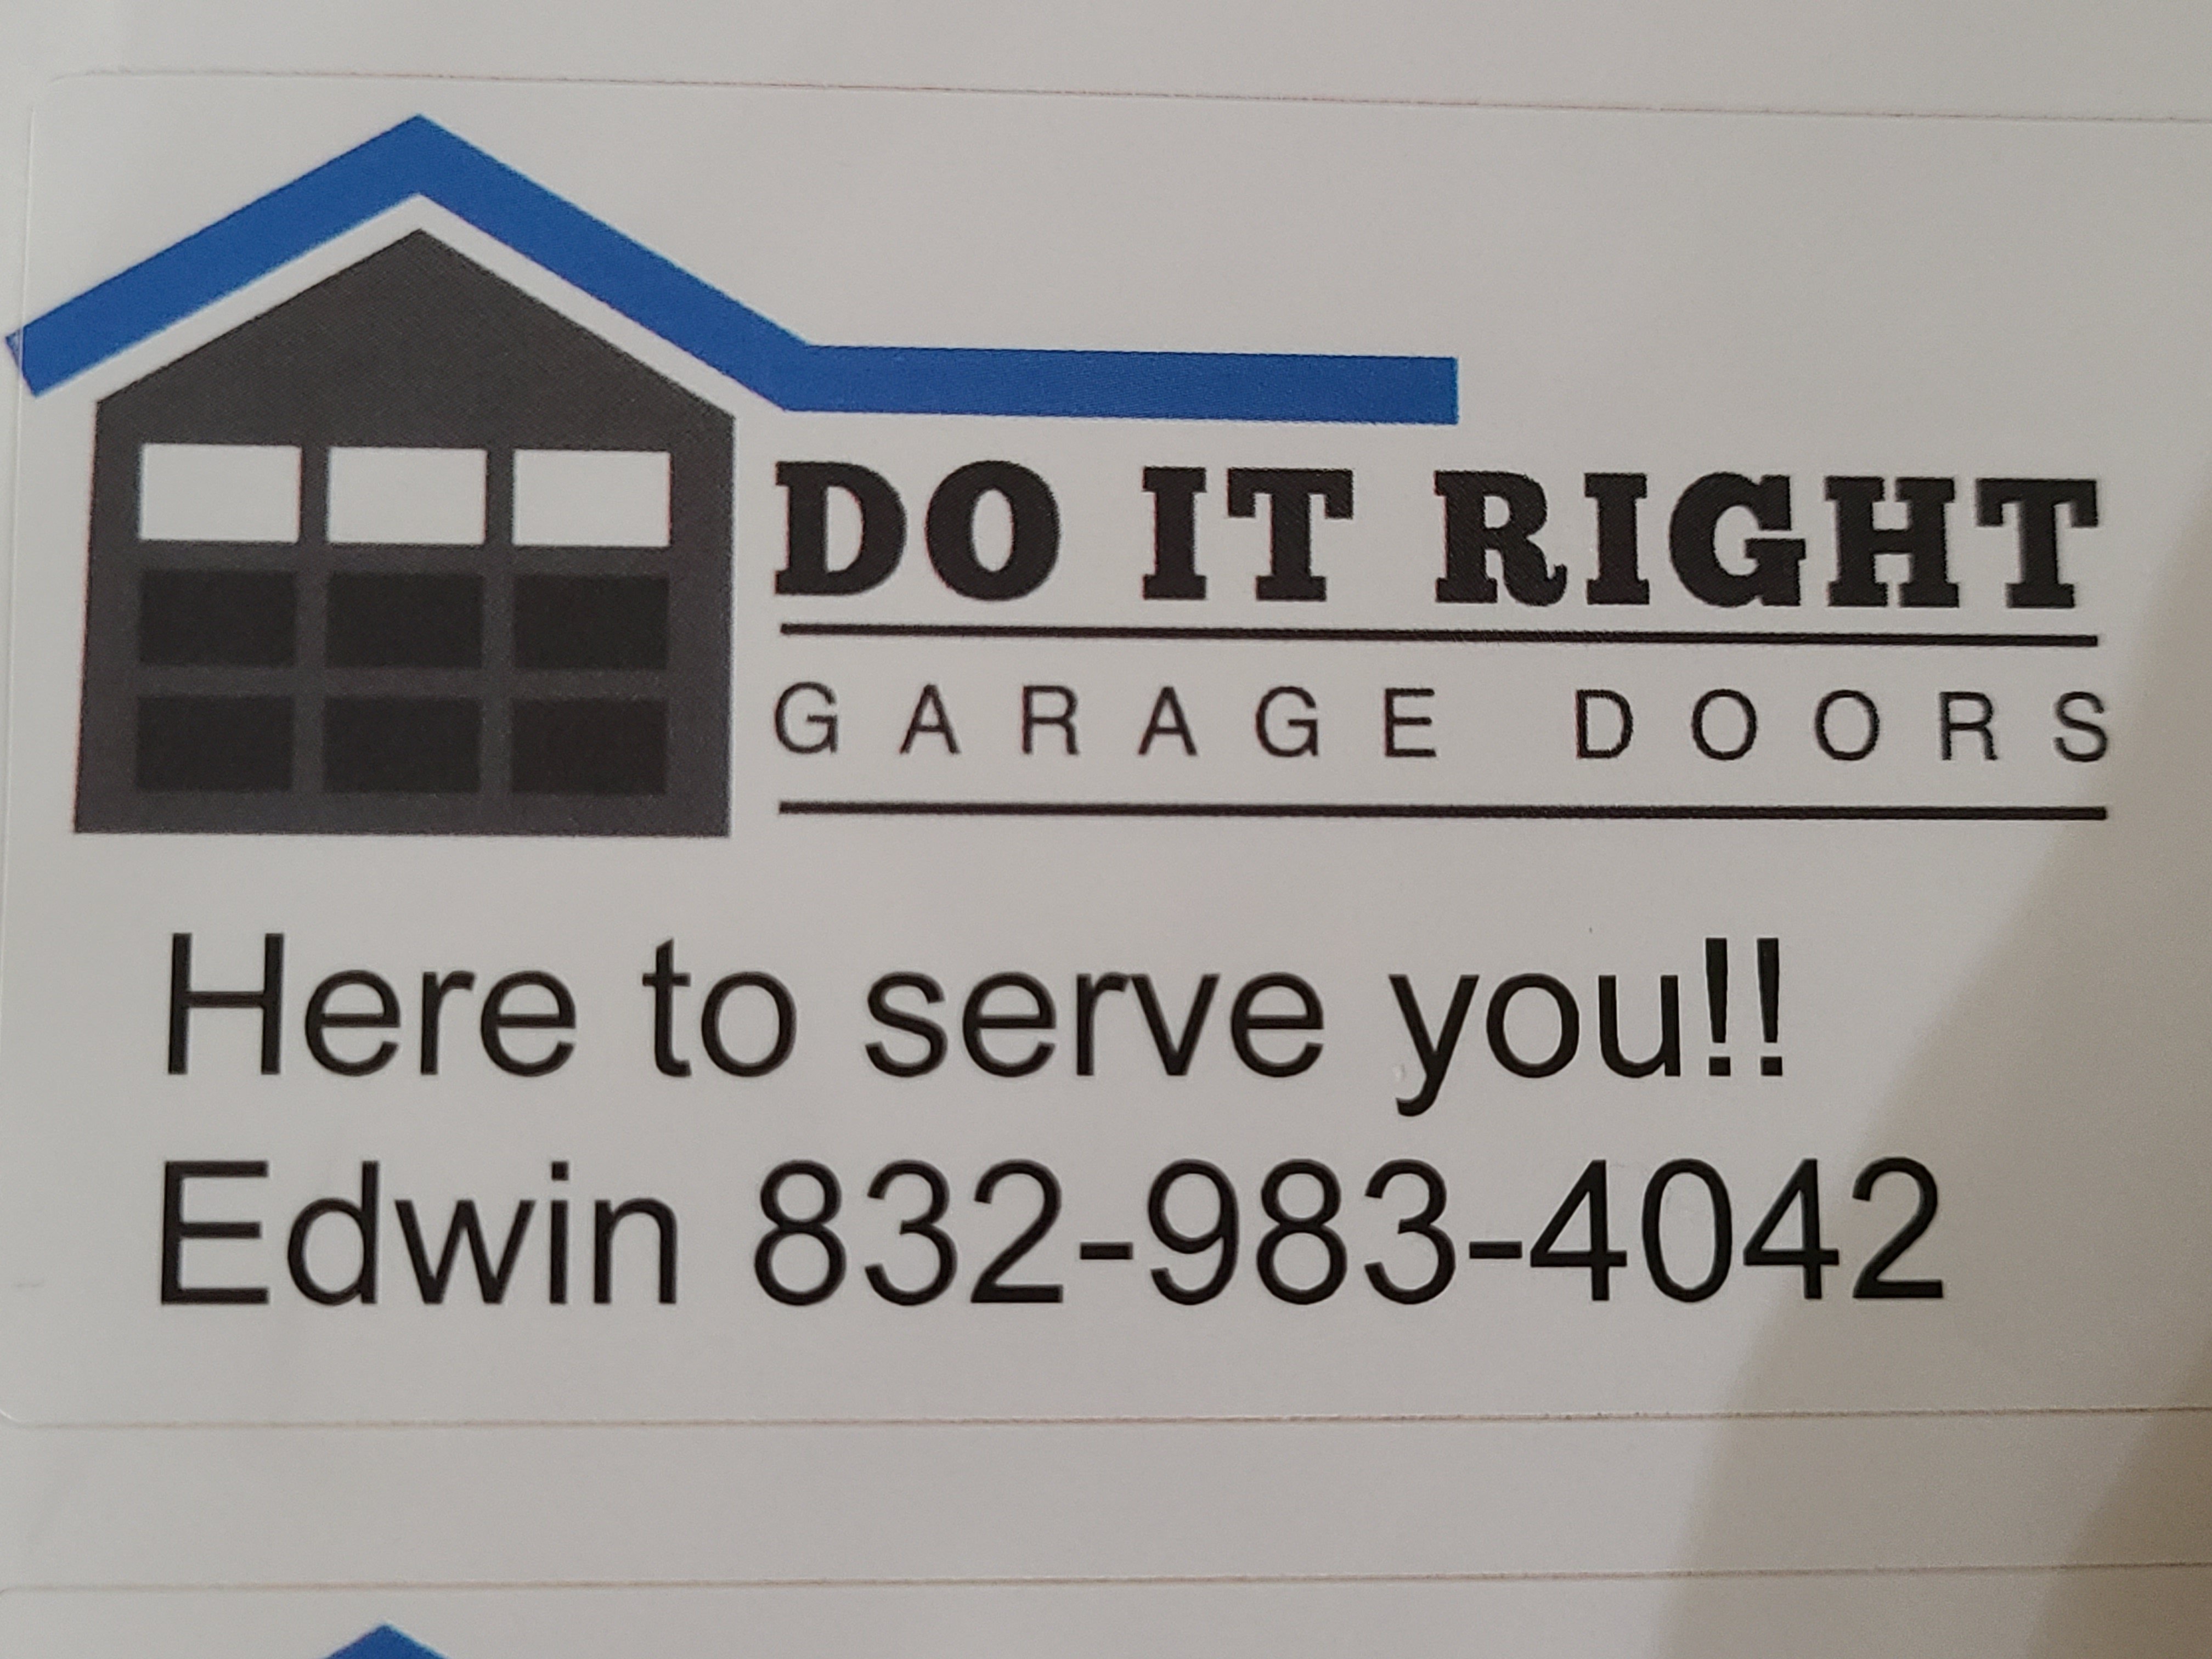 Do It Right Garage Door Logo